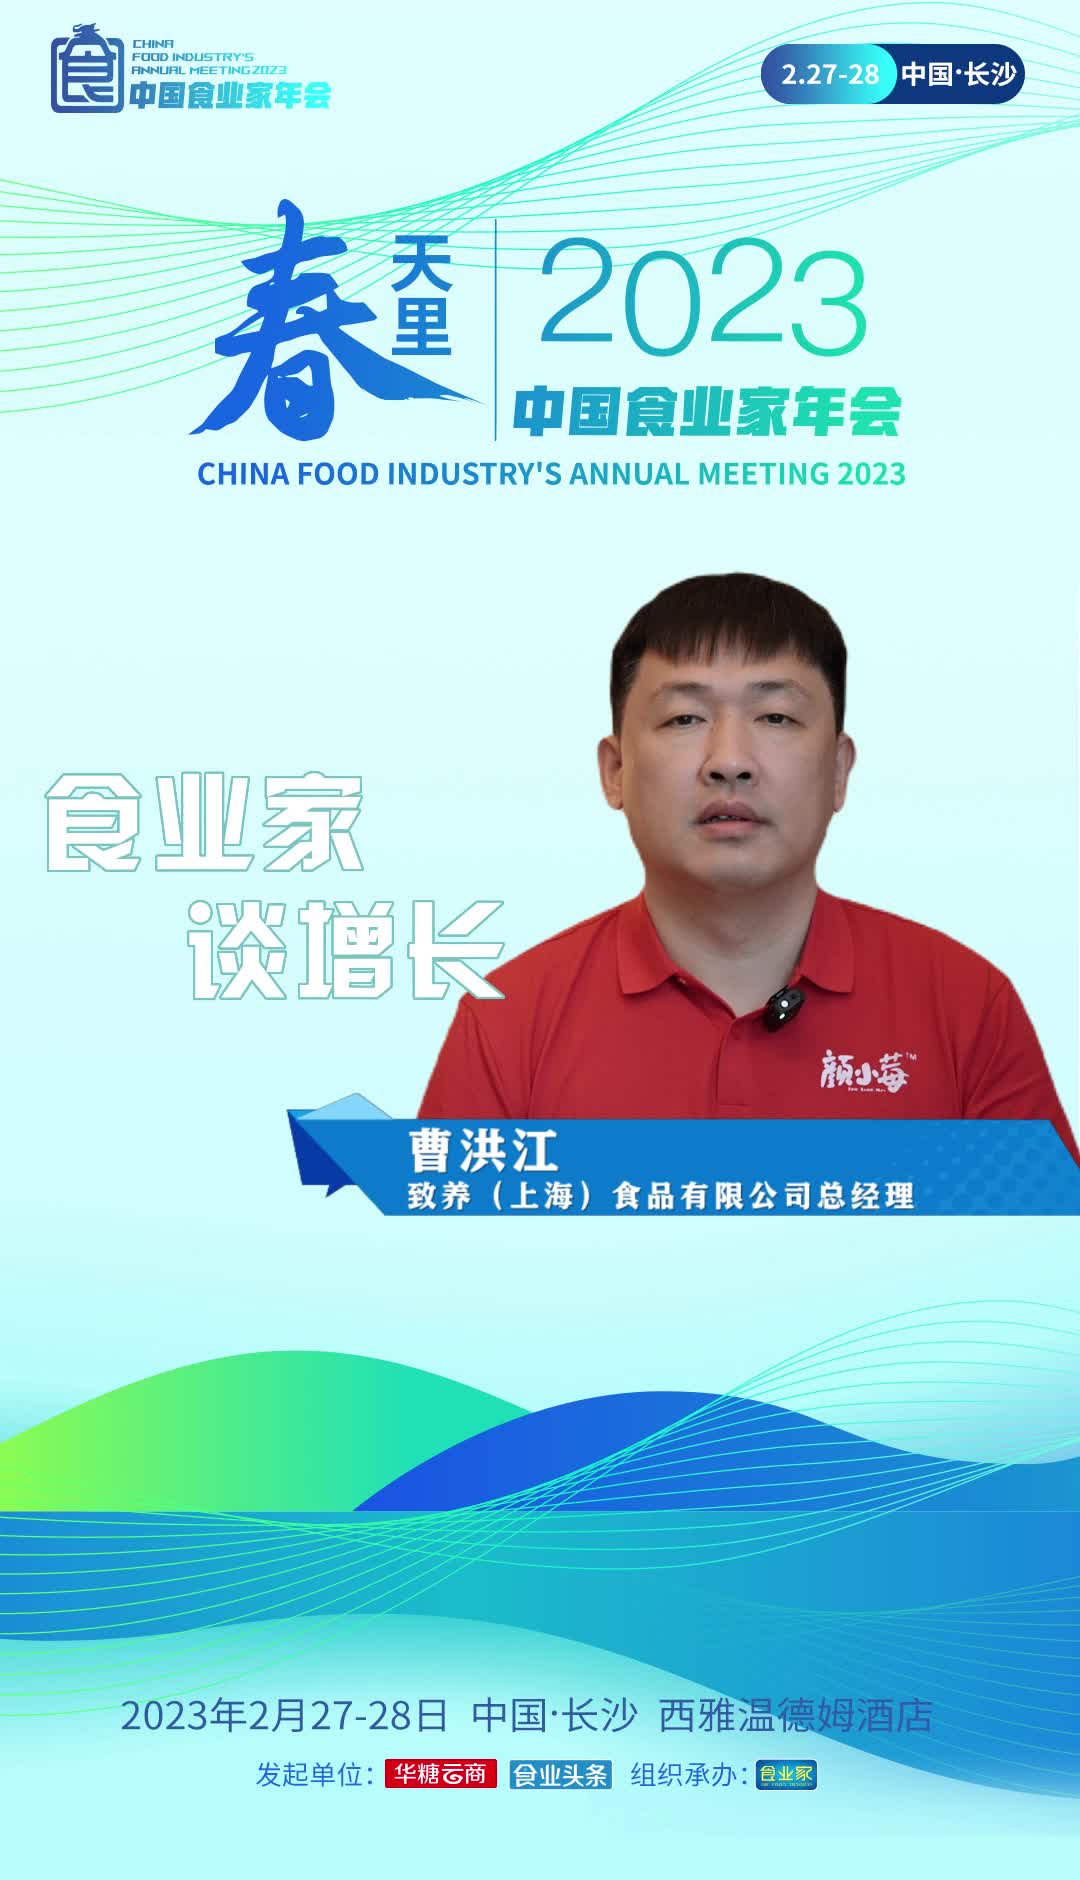 #食业家谈增长 致养（上海）食品有限公司总经理曹洪江认为2023年将是食品行业迎来井喷的一年